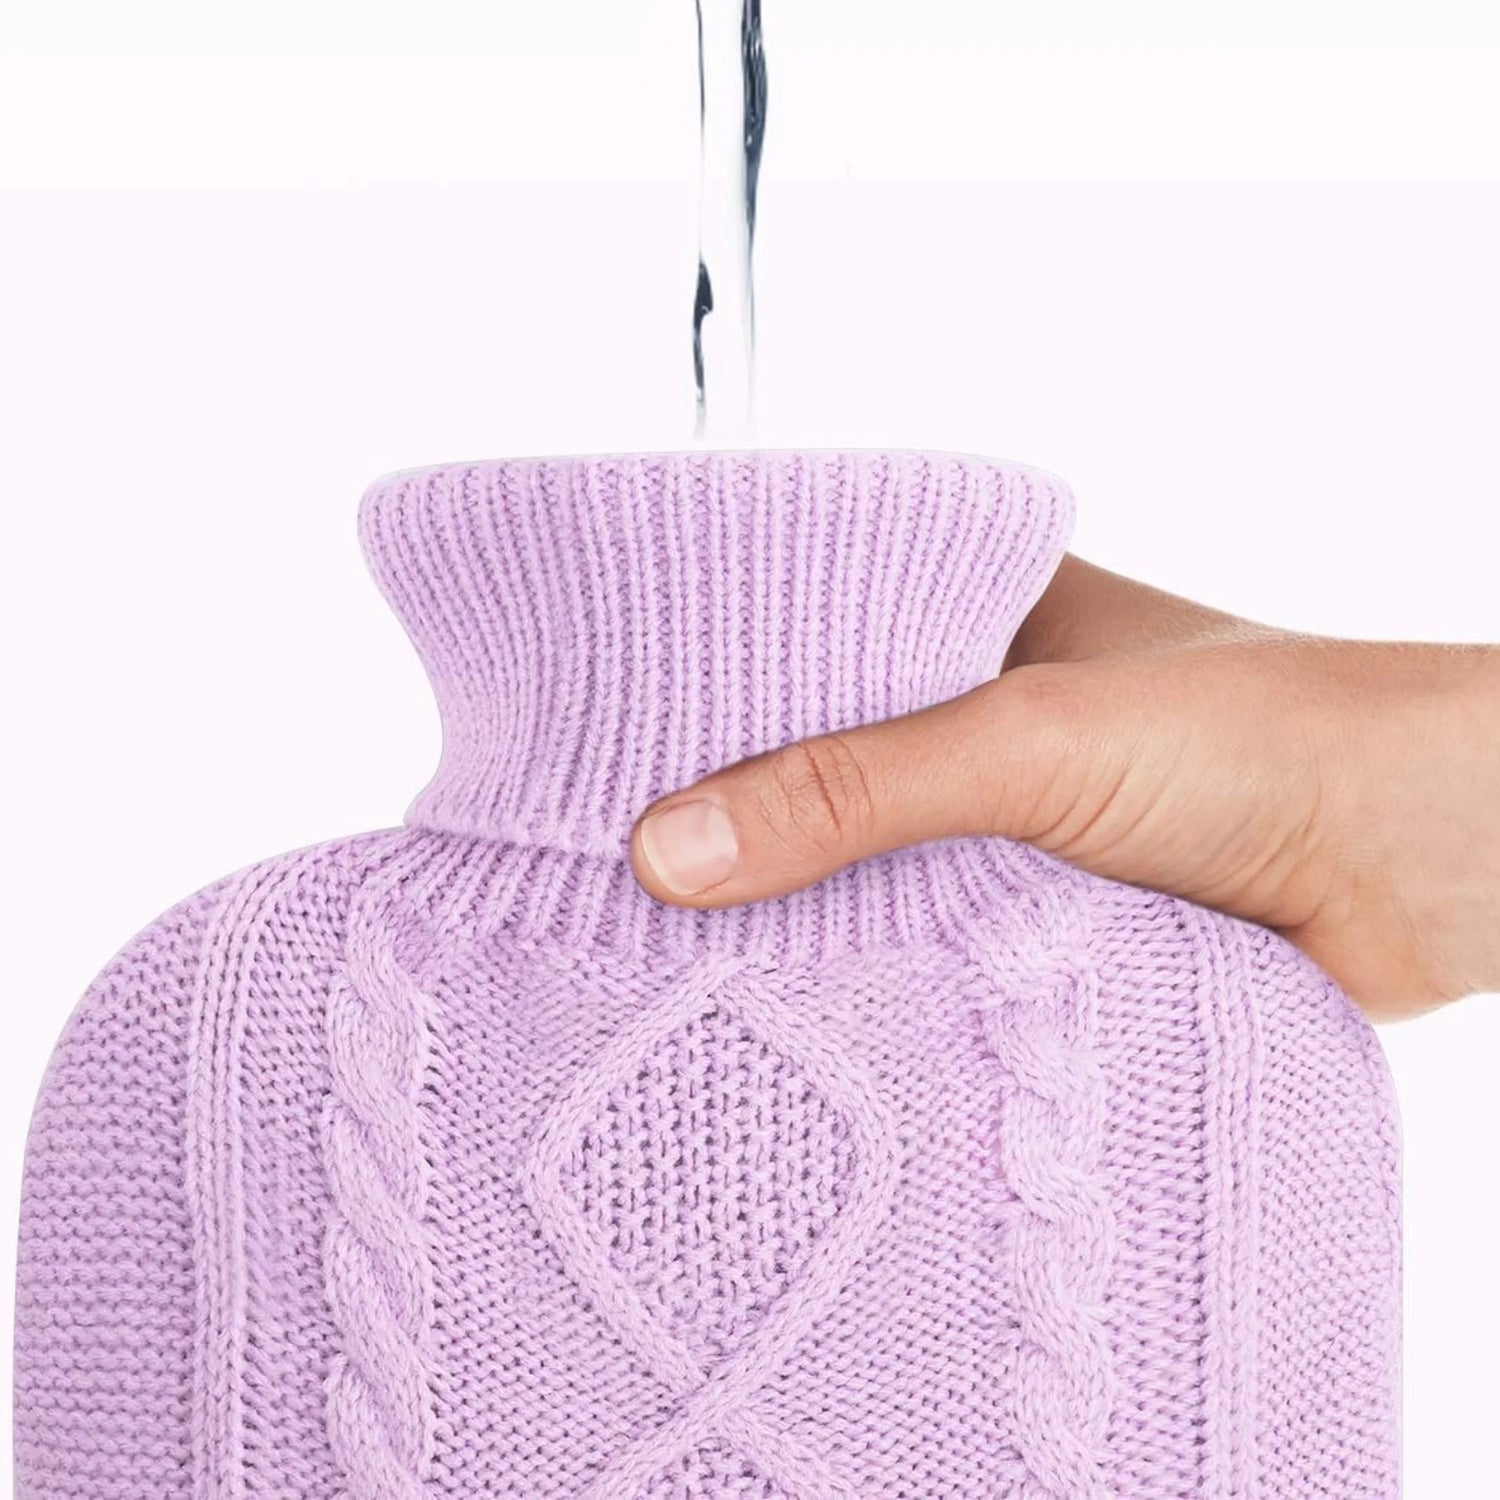 Hot Water Bottle in Fleece Knit Pink